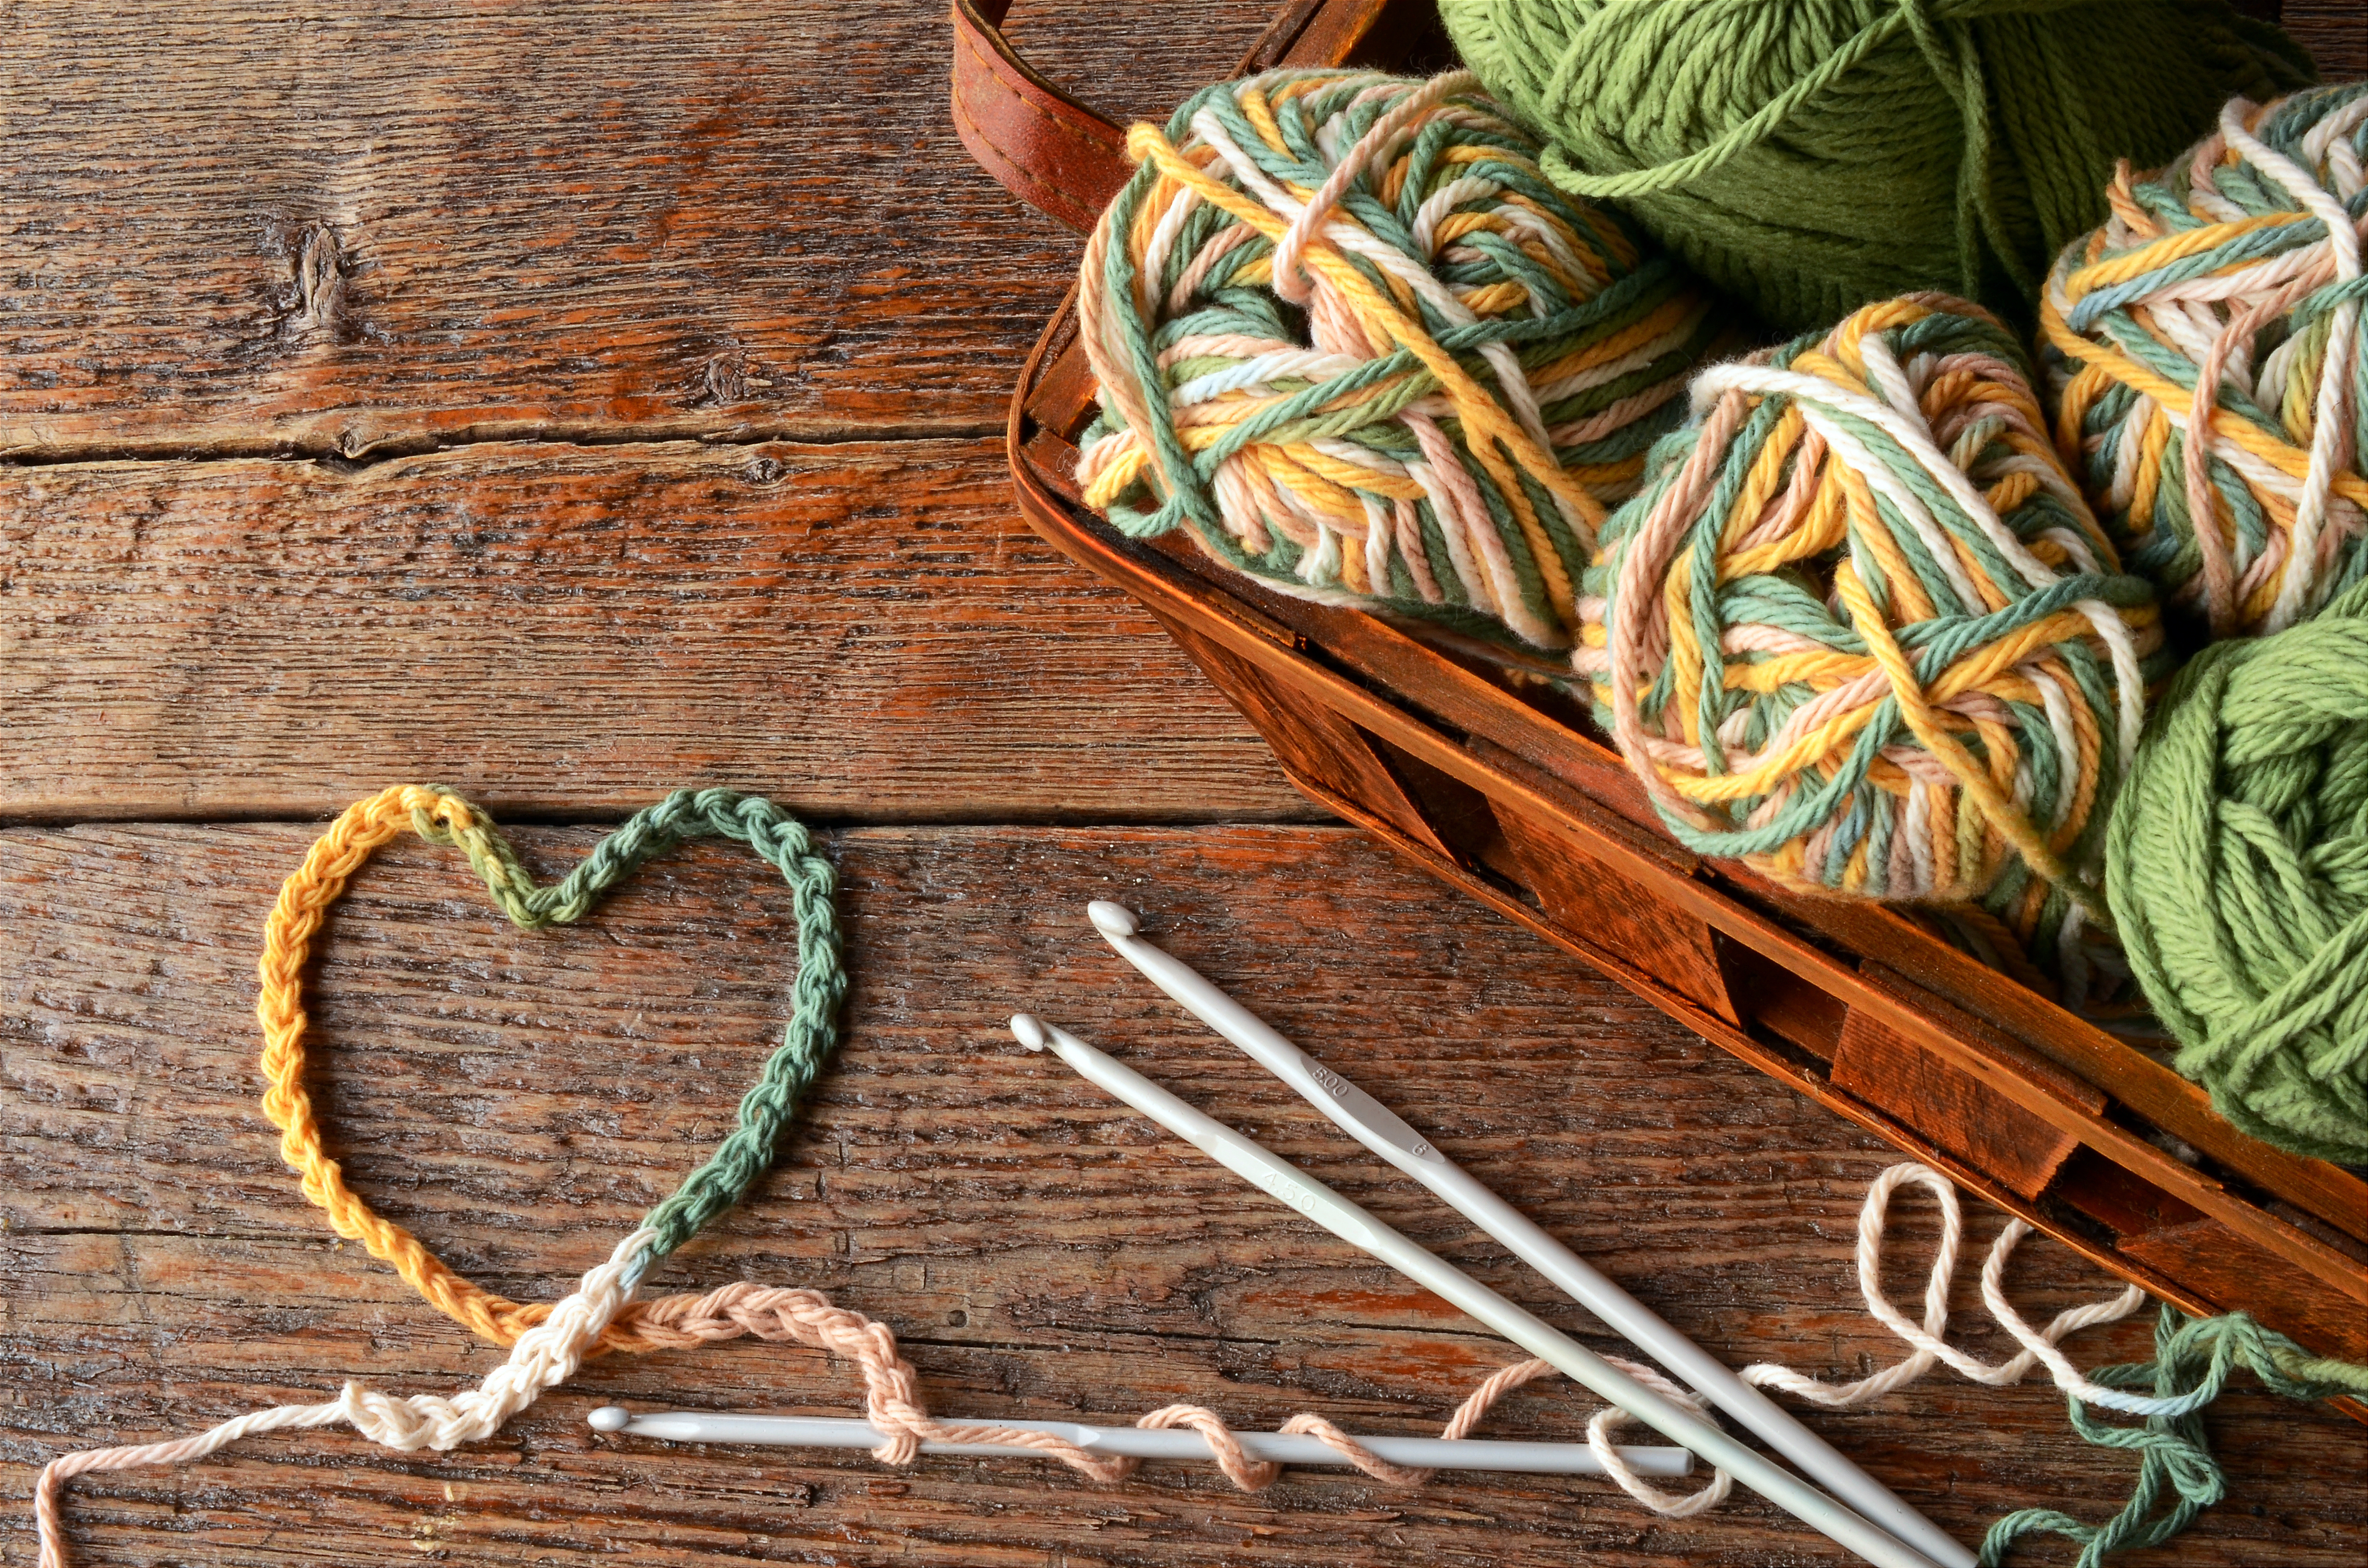 crochet hooks & yarn